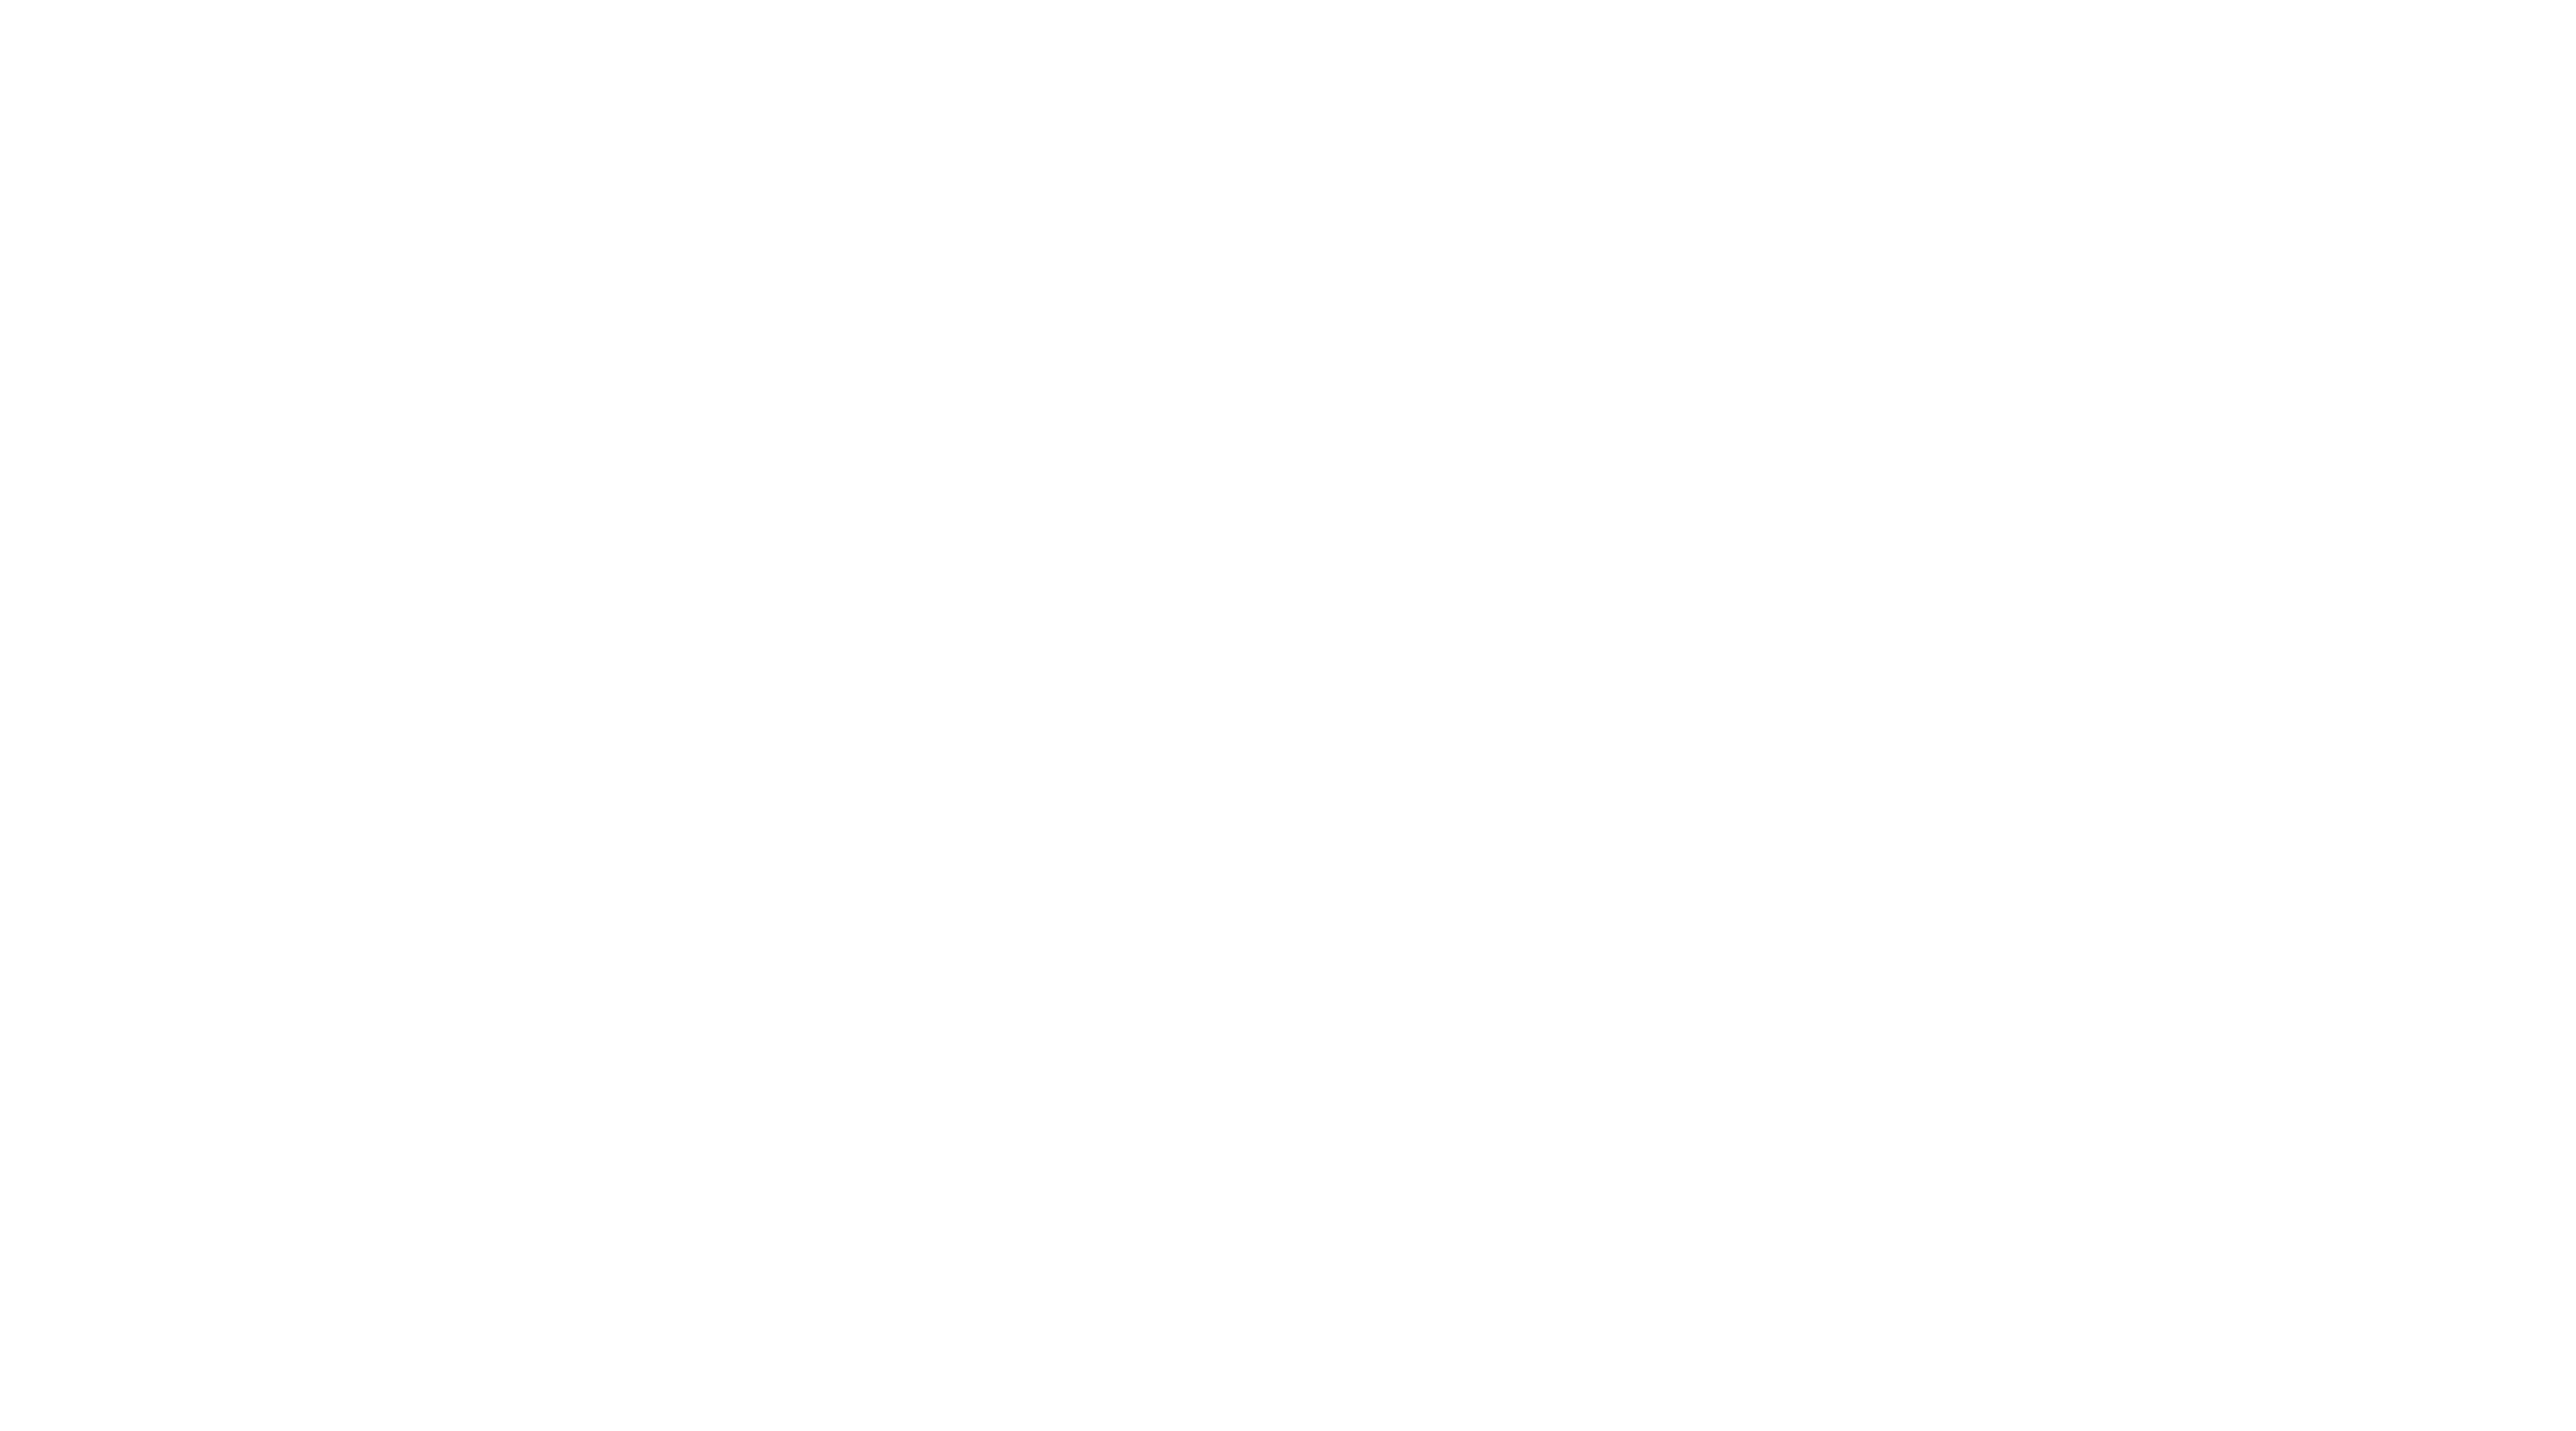 Logotipo de Flo